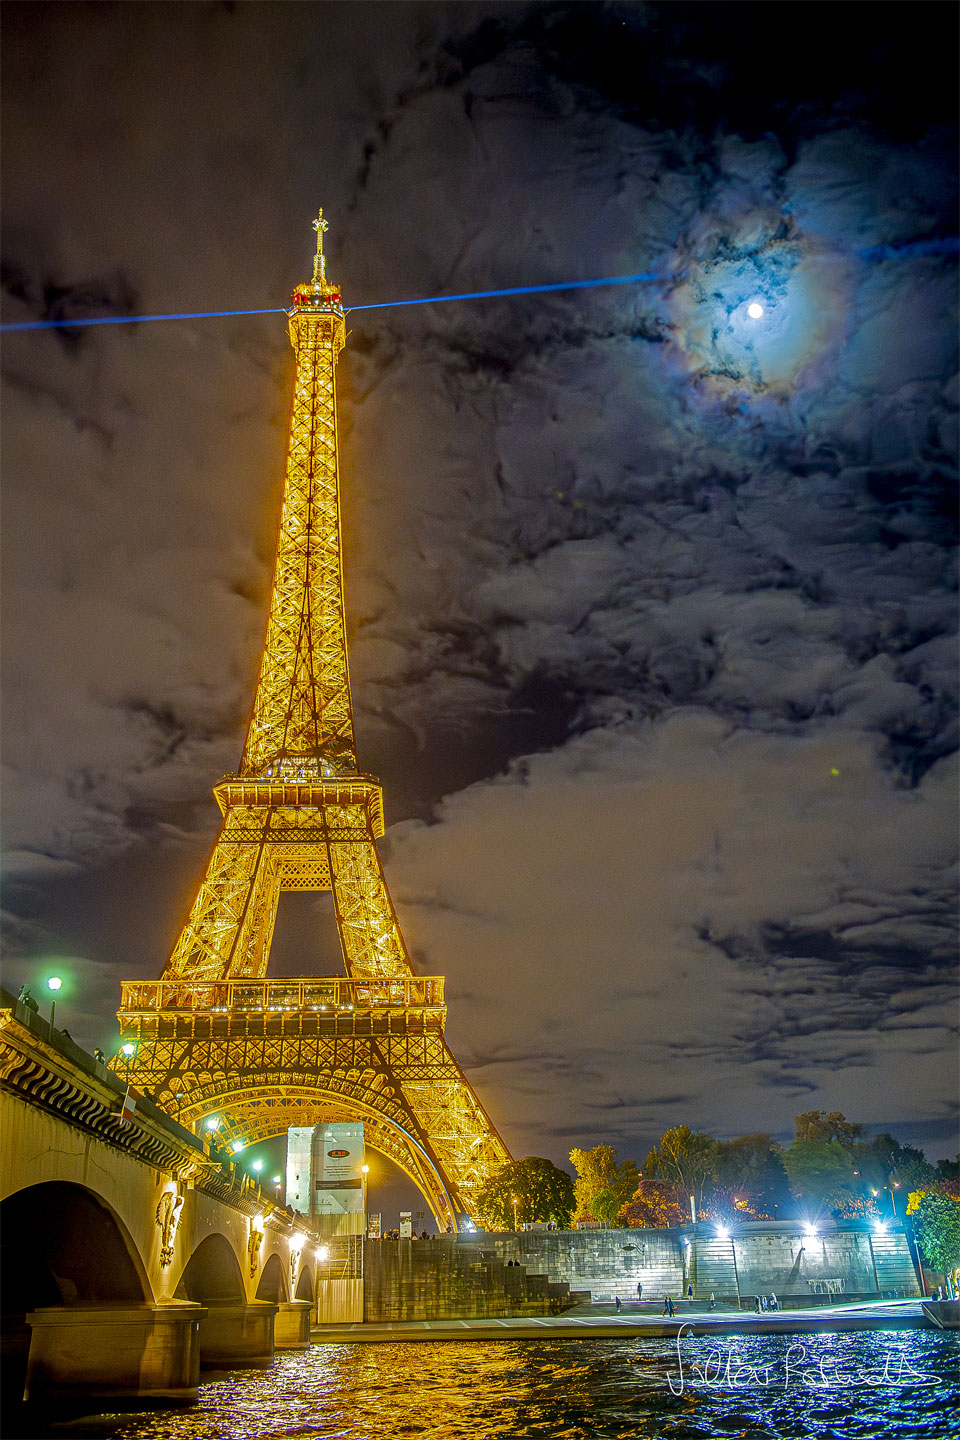 Po lewej stronie zdjęcia widoczna jest słynna, paryska wieża Eiffela, podświetlona na złoty kolor. Z jej szczytu wydobywa się promień niebieskiego lasera.
Na niebie widać pojedyncze chmury. Przez chmury widoczny jest Księżyc, otoczony kolorowymi pierścieniami: koroną słoneczną.
Więcej szczegółowych informacji w opisie poniżej.